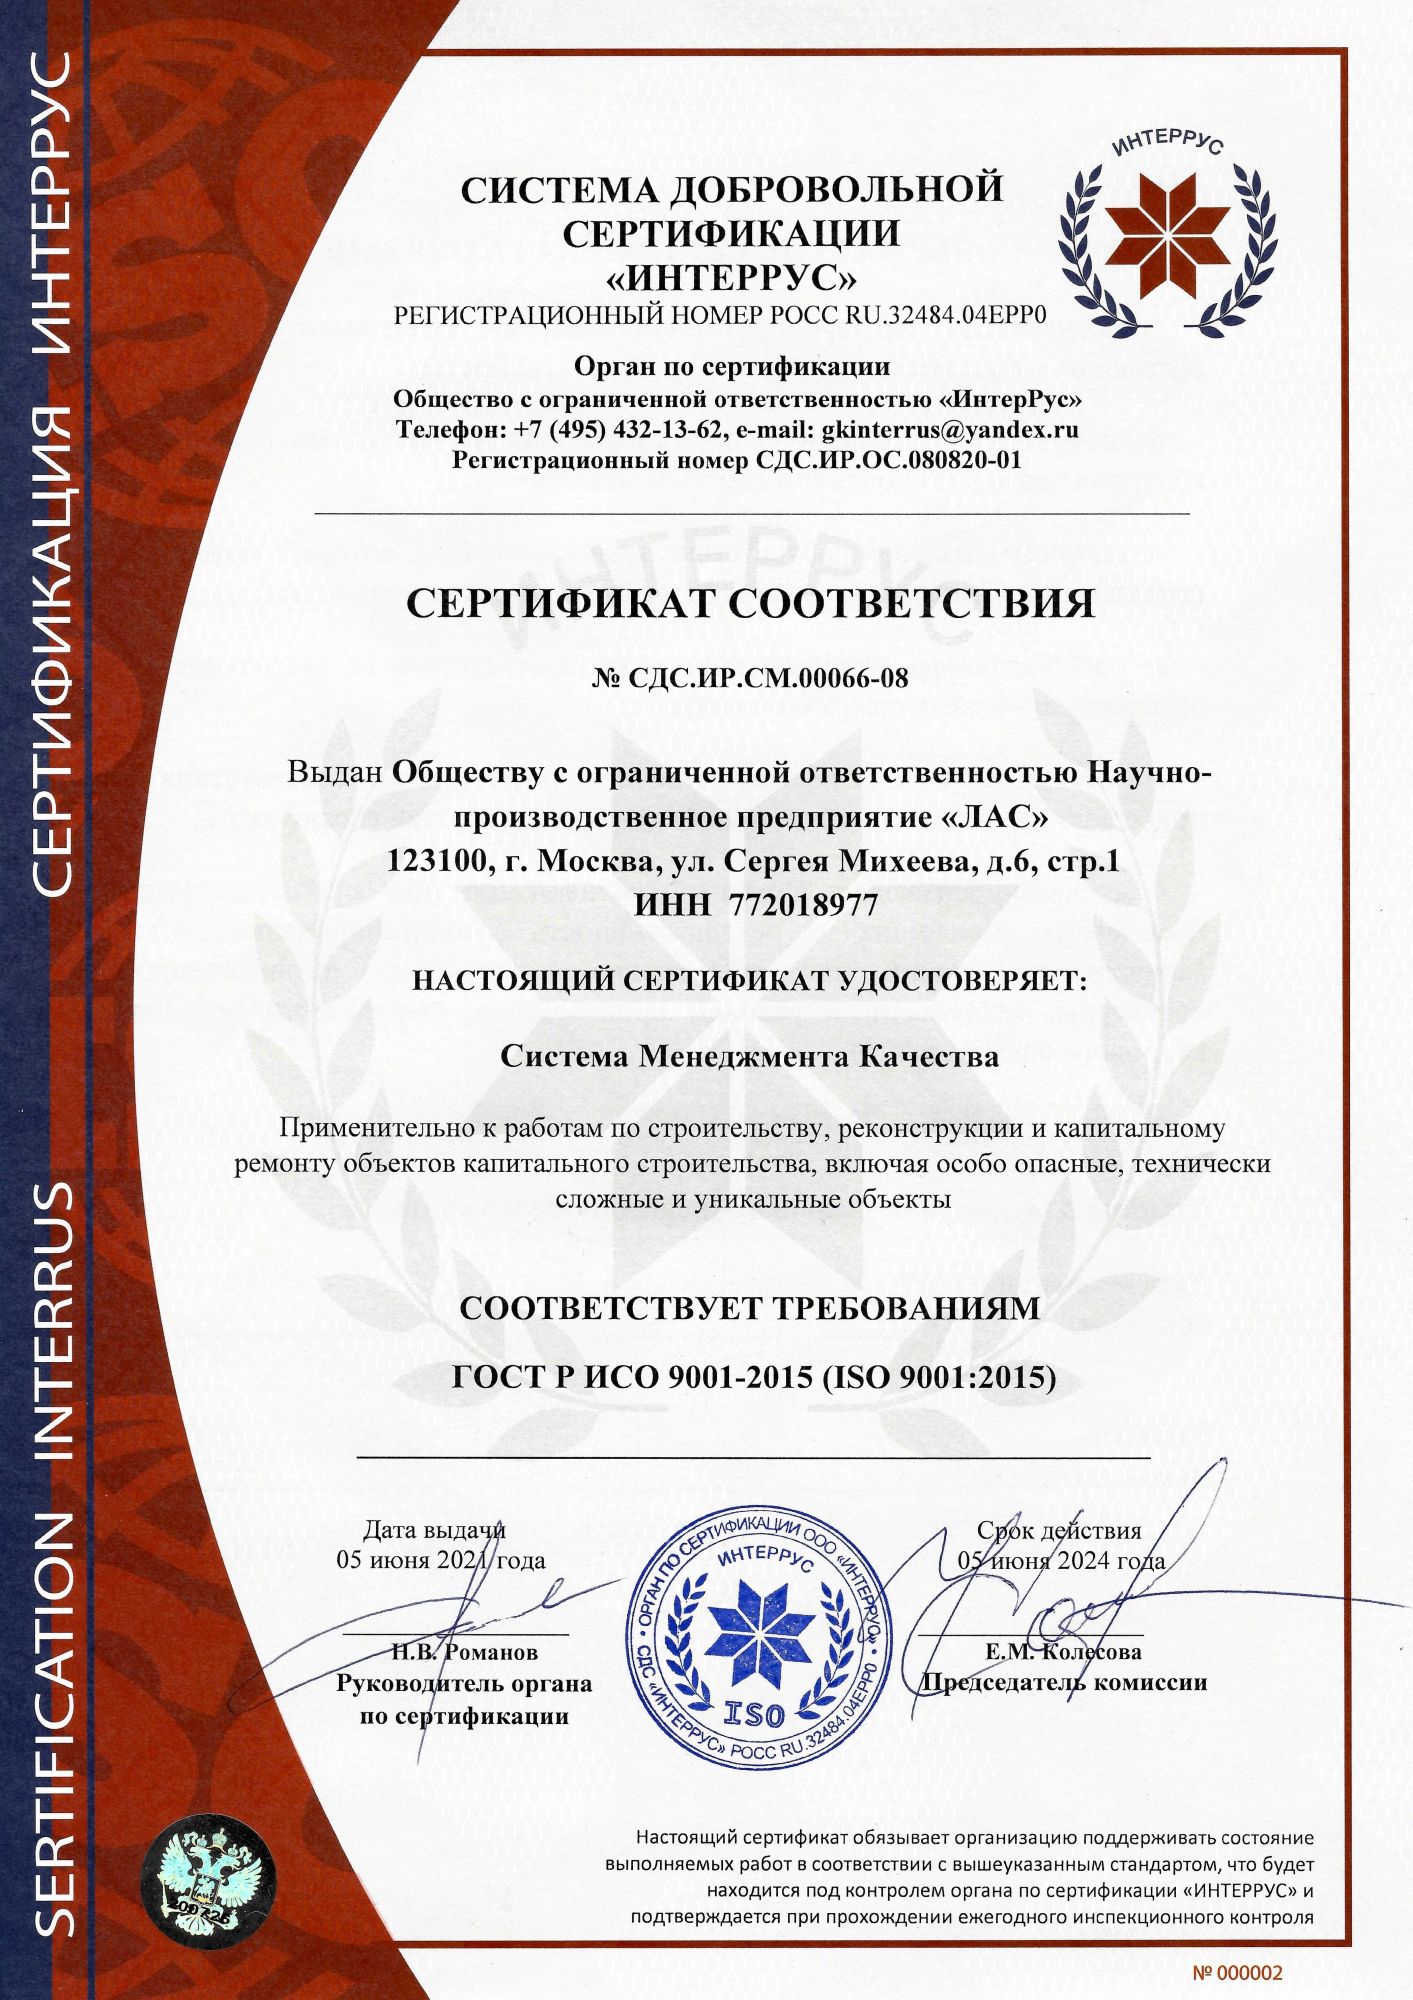 ГОСТ Р ИСО 45001-2020 (ISO 45001:2018)